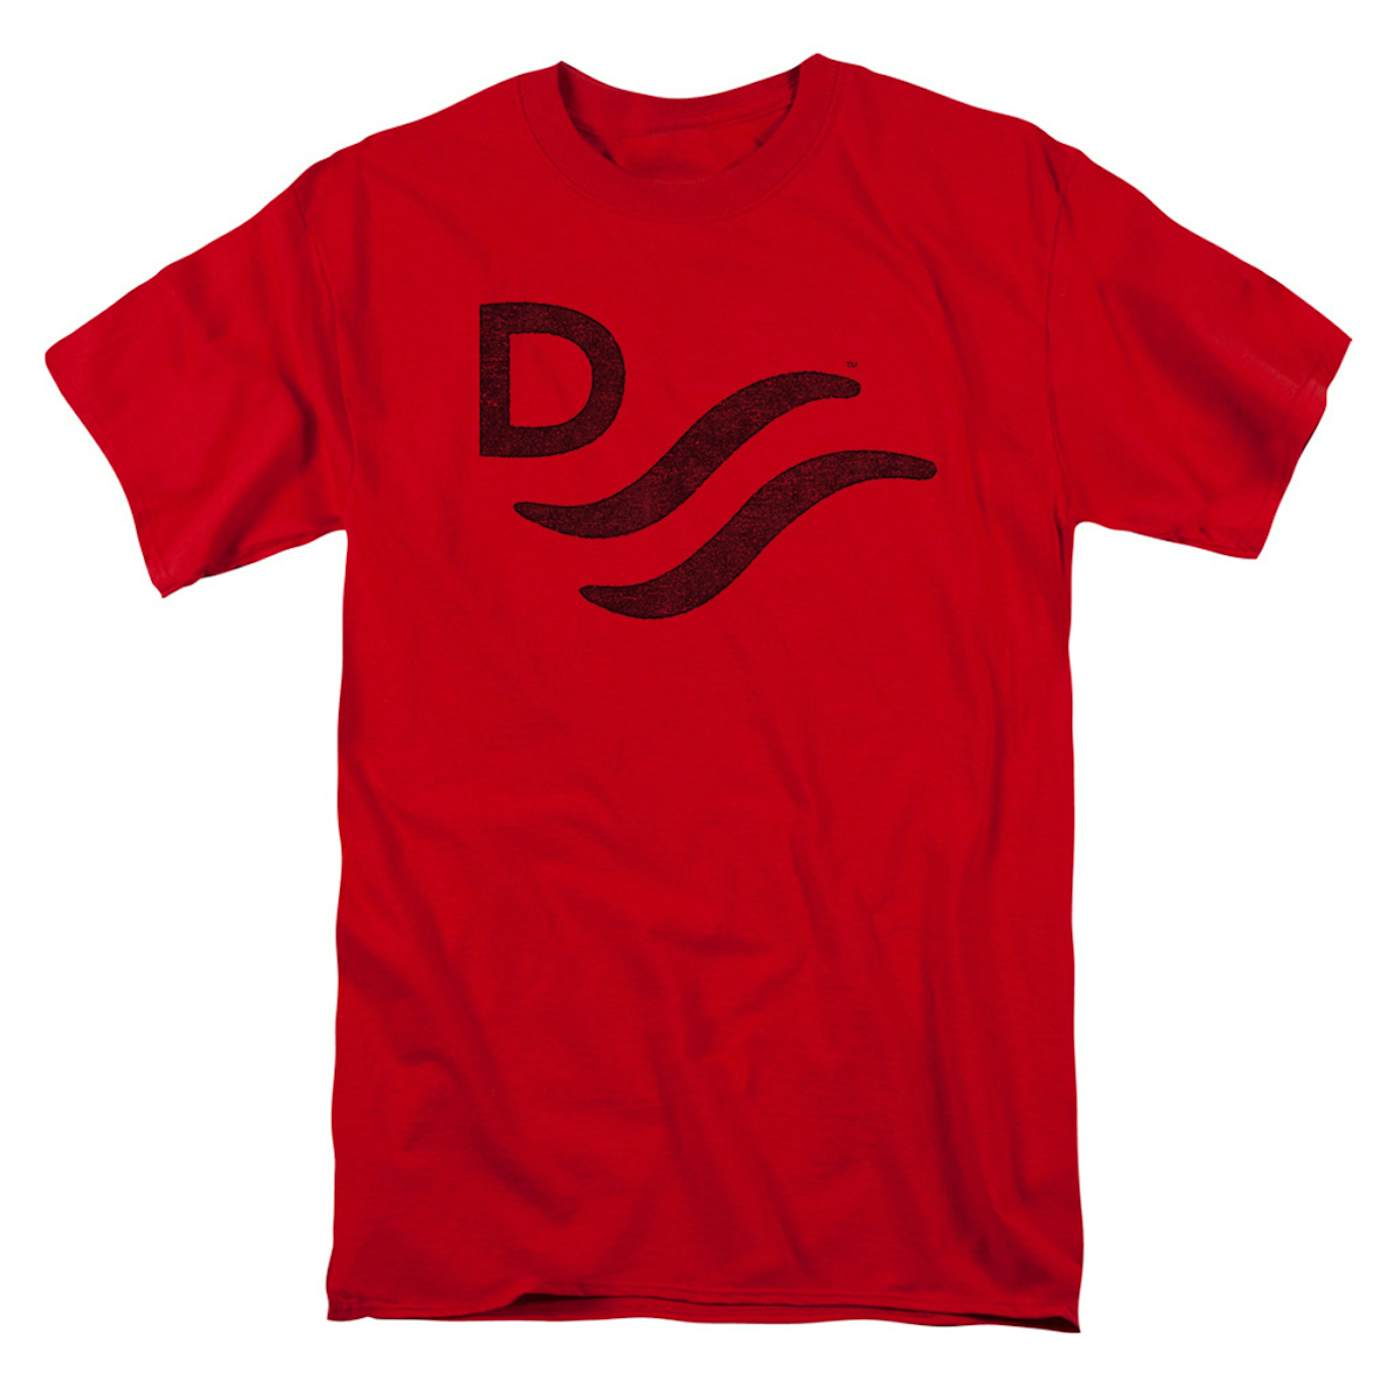 John Wayne Red River D T-Shirt